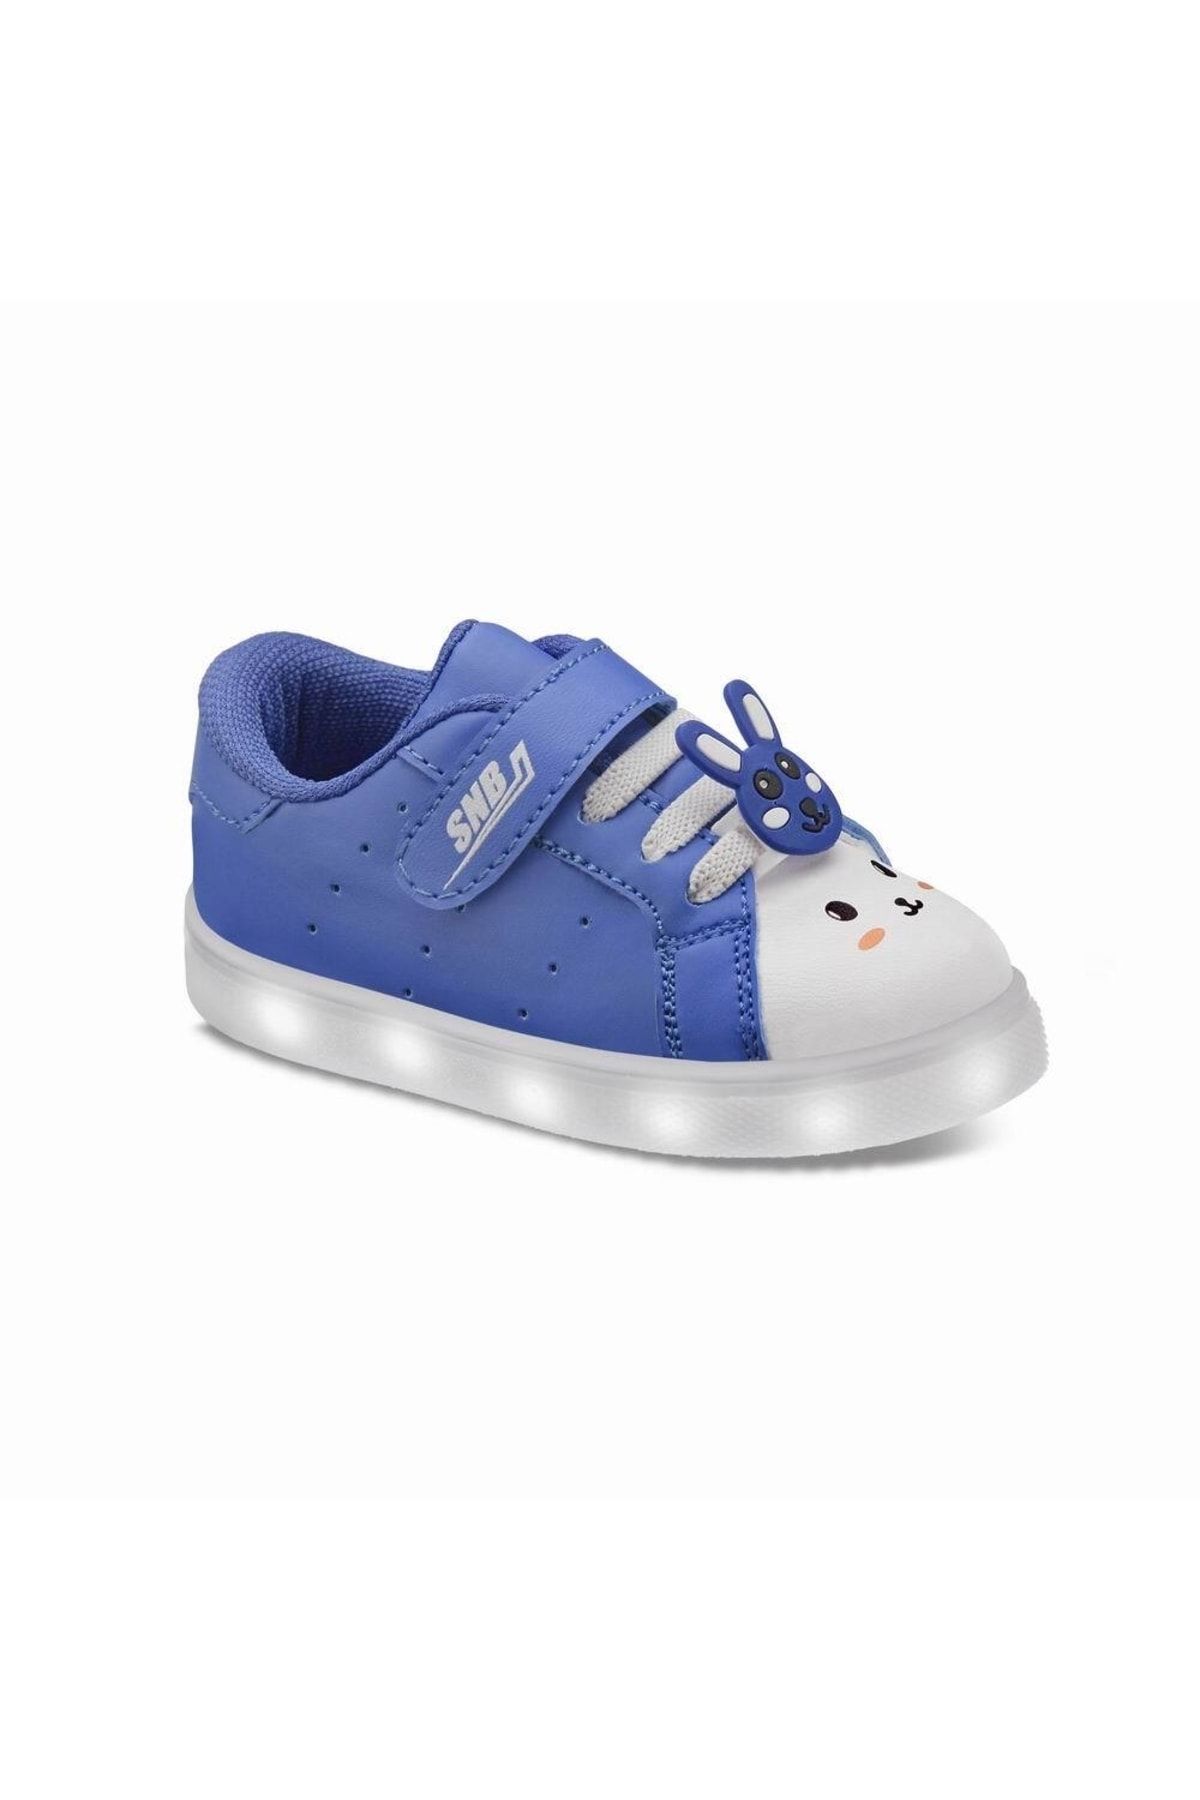 Sanbe 129v7701 Işıklı Çocuk Spor Ayakkabı